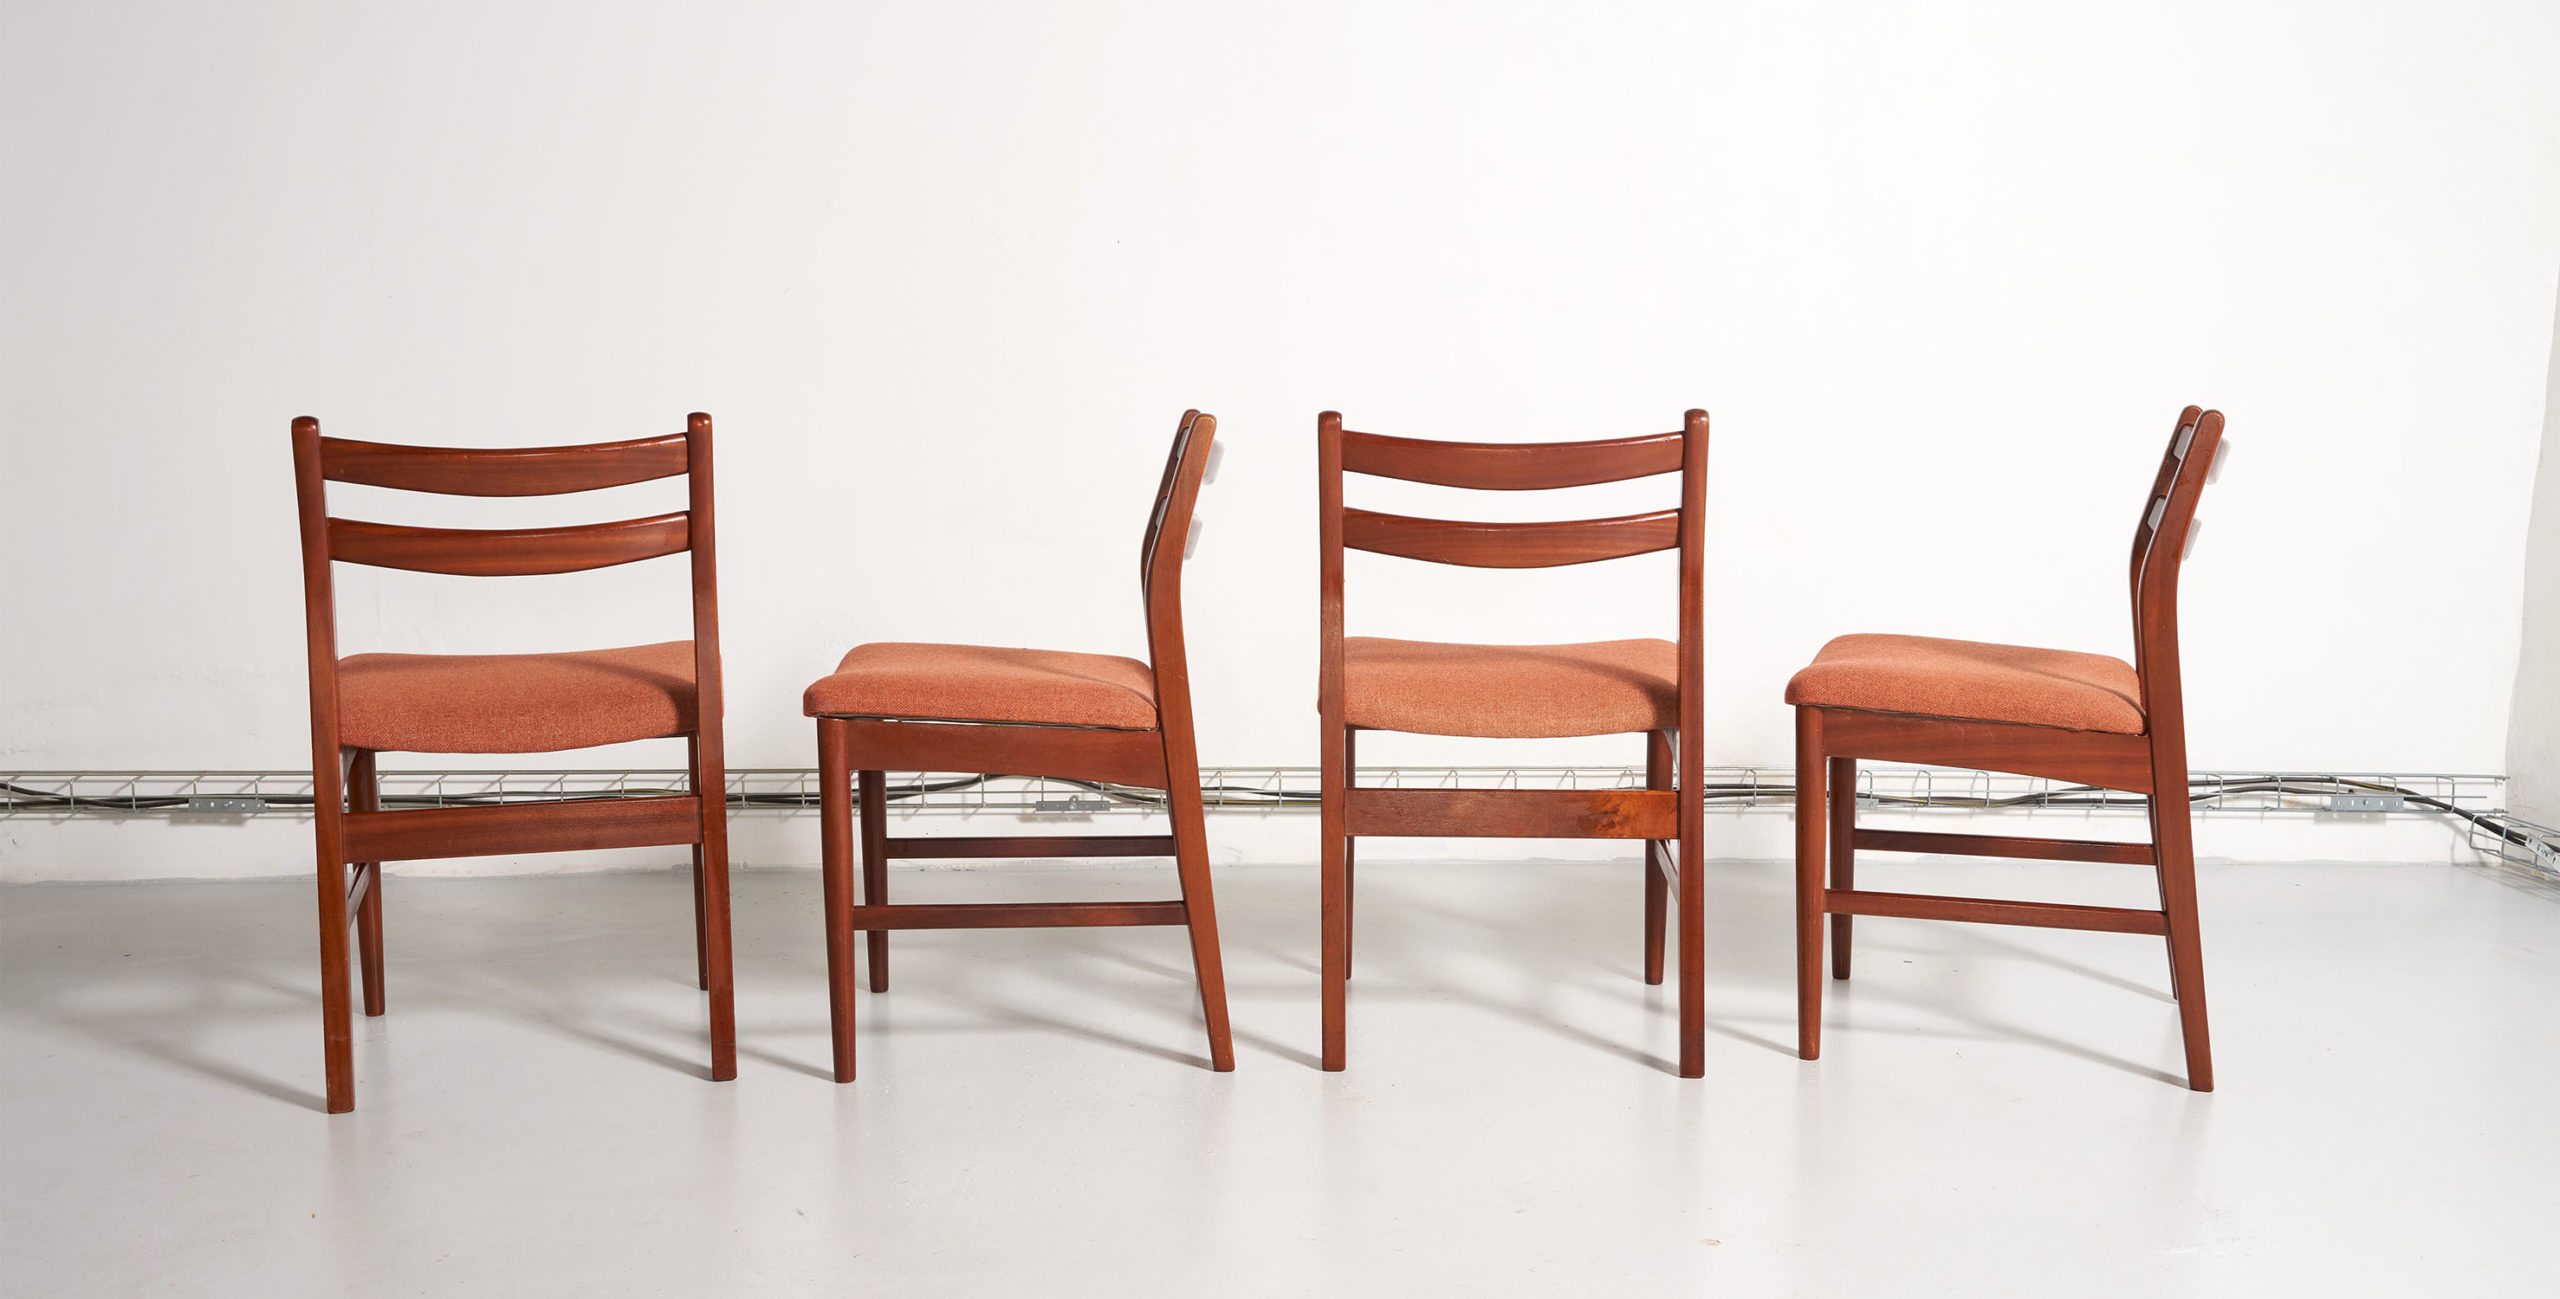 4 chaises vintage, 4 chaises teck, 4 chaises scandinaves, chaises scandinaves, chaises danoises, chaises scandinaves vintage, chaises en teck, chaises vintage